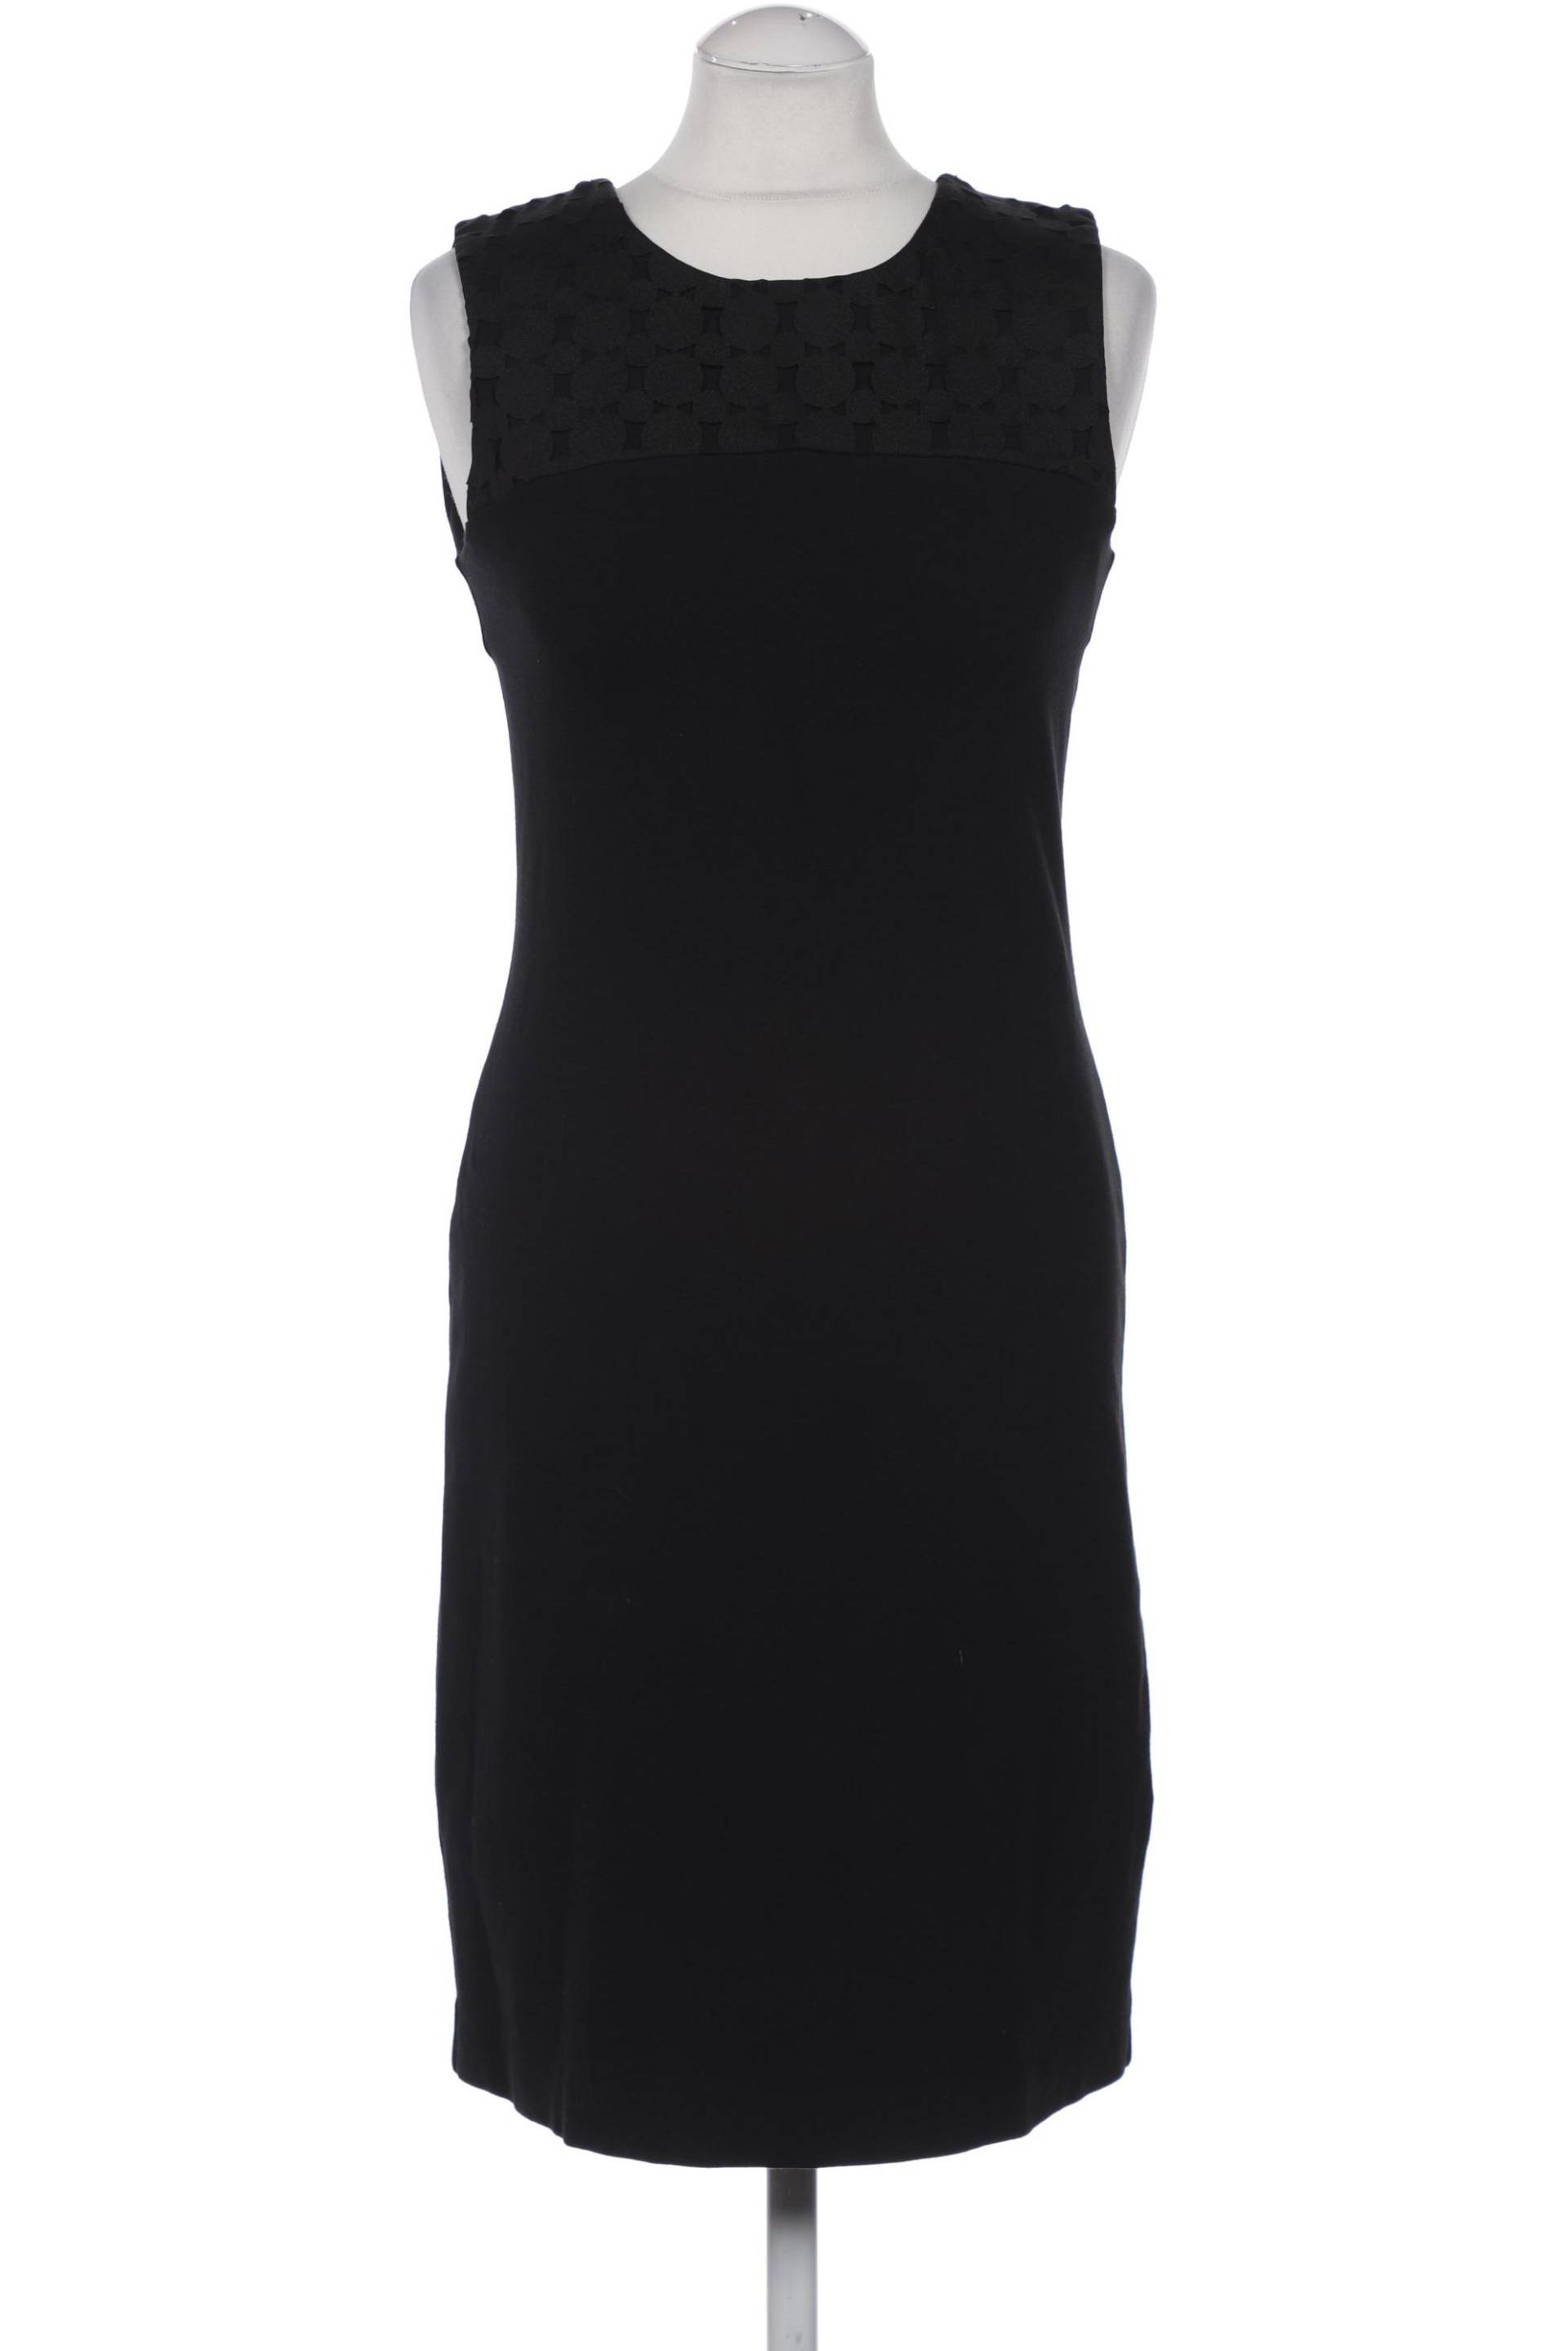 Zero Damen Kleid, schwarz, Gr. 36 von Zero